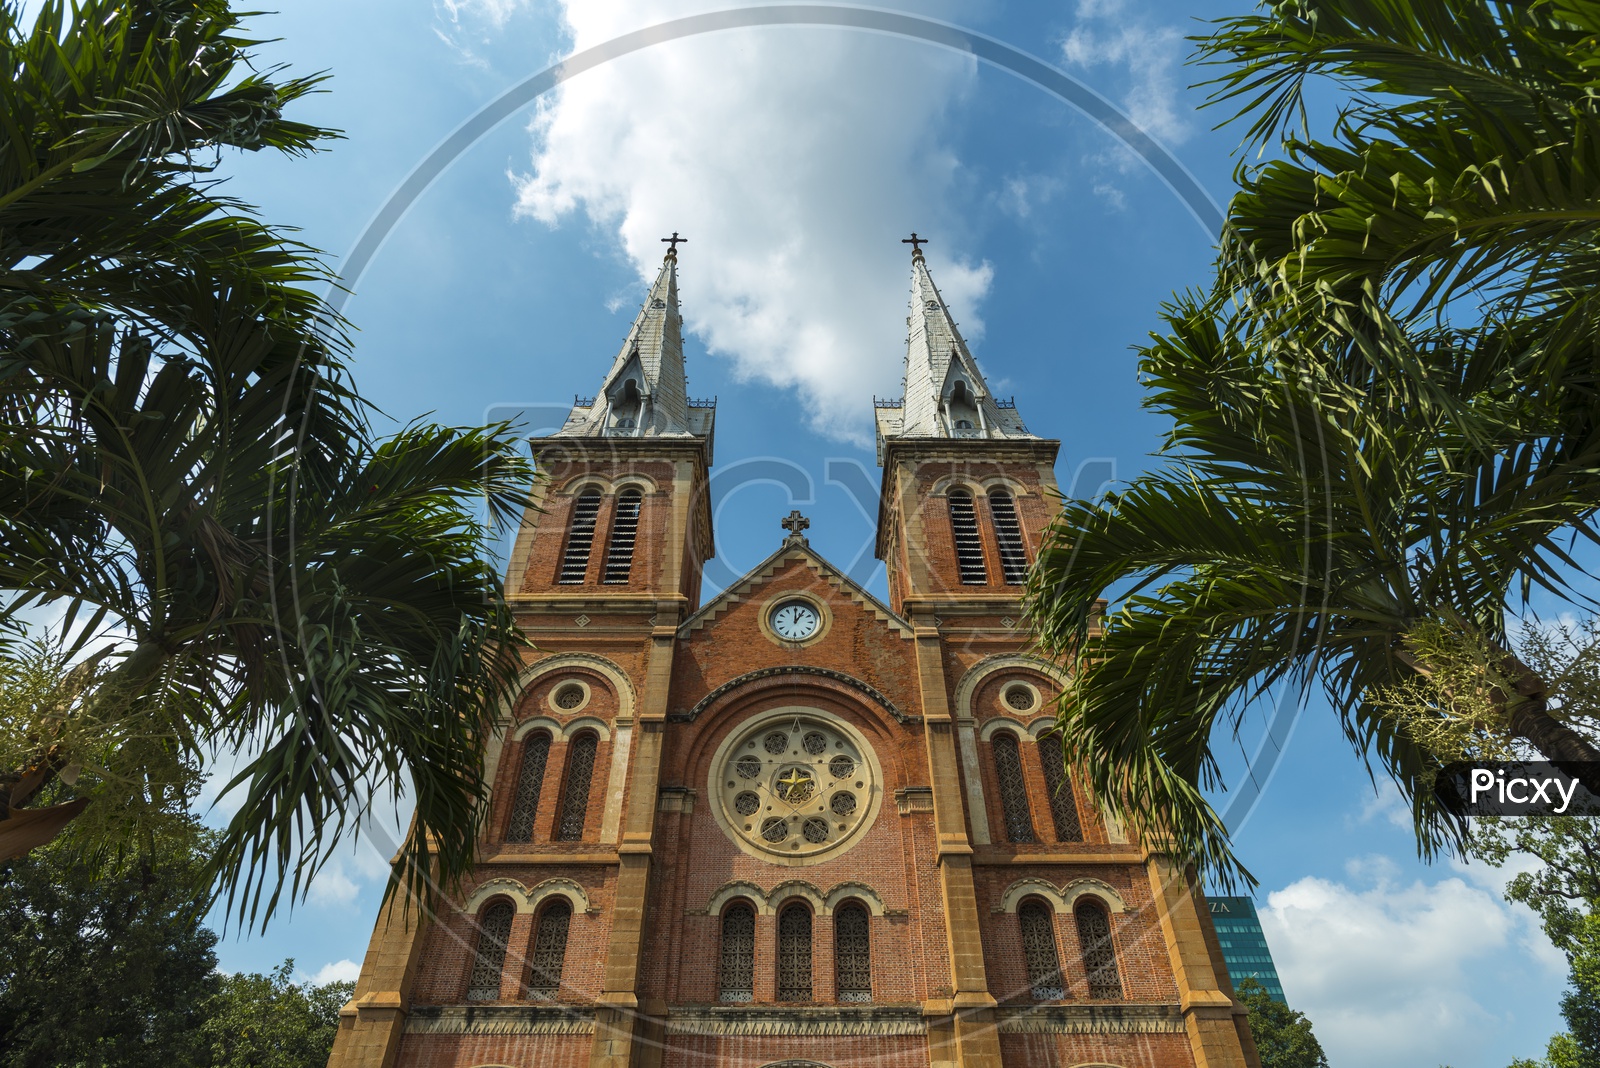 View of Saigon Notre-Dame Basilica in Ho Chi Minh City, Vietnam.